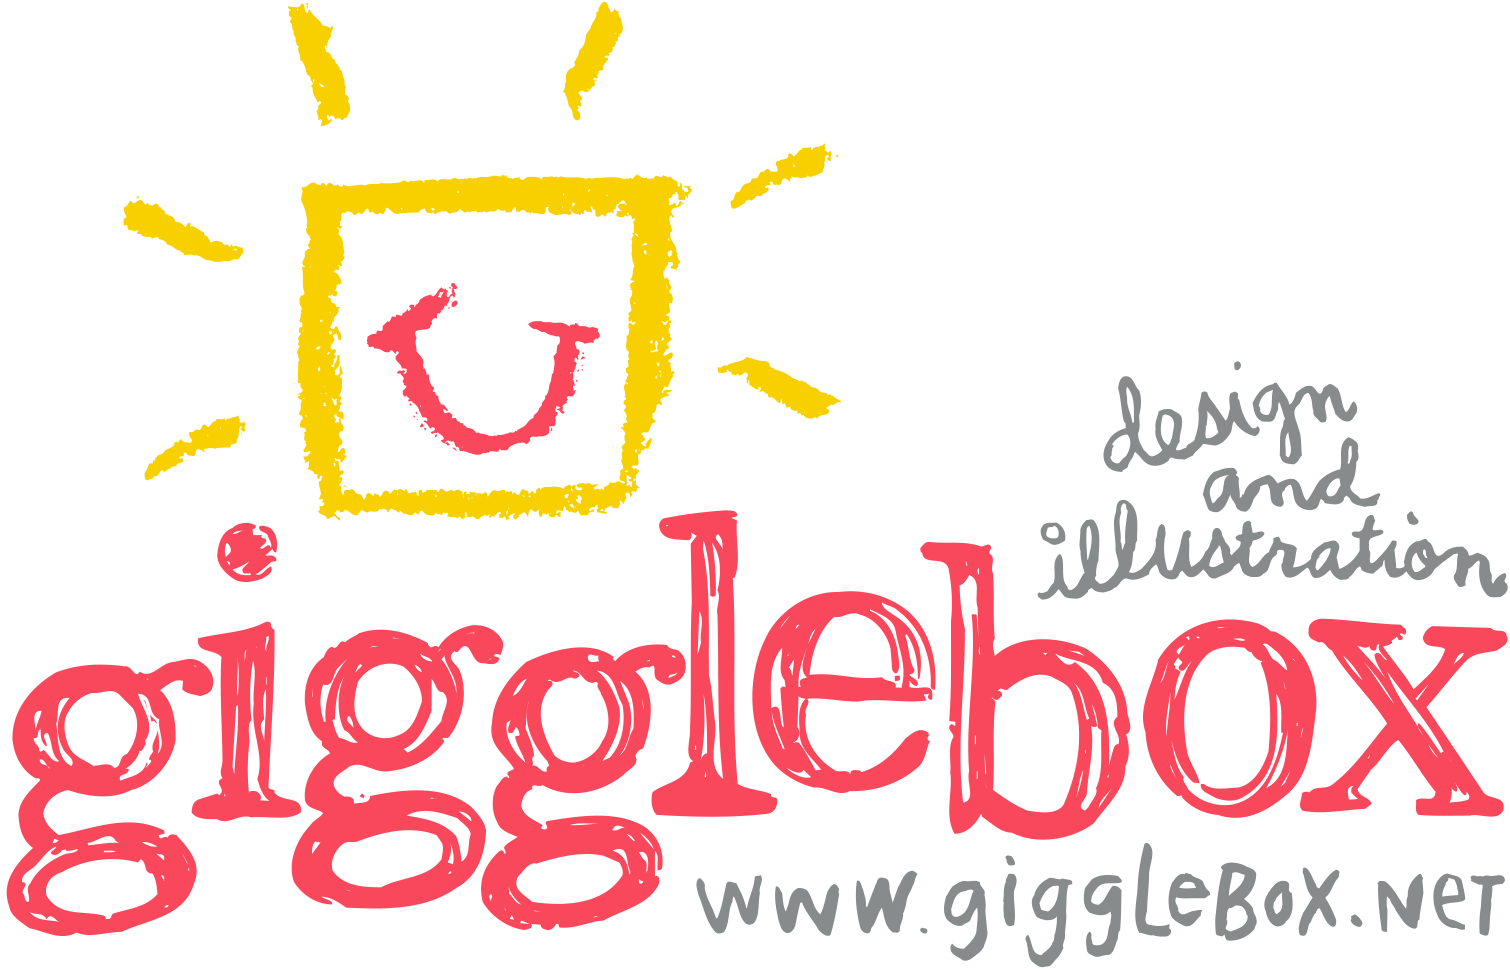 gigglebox logo.png